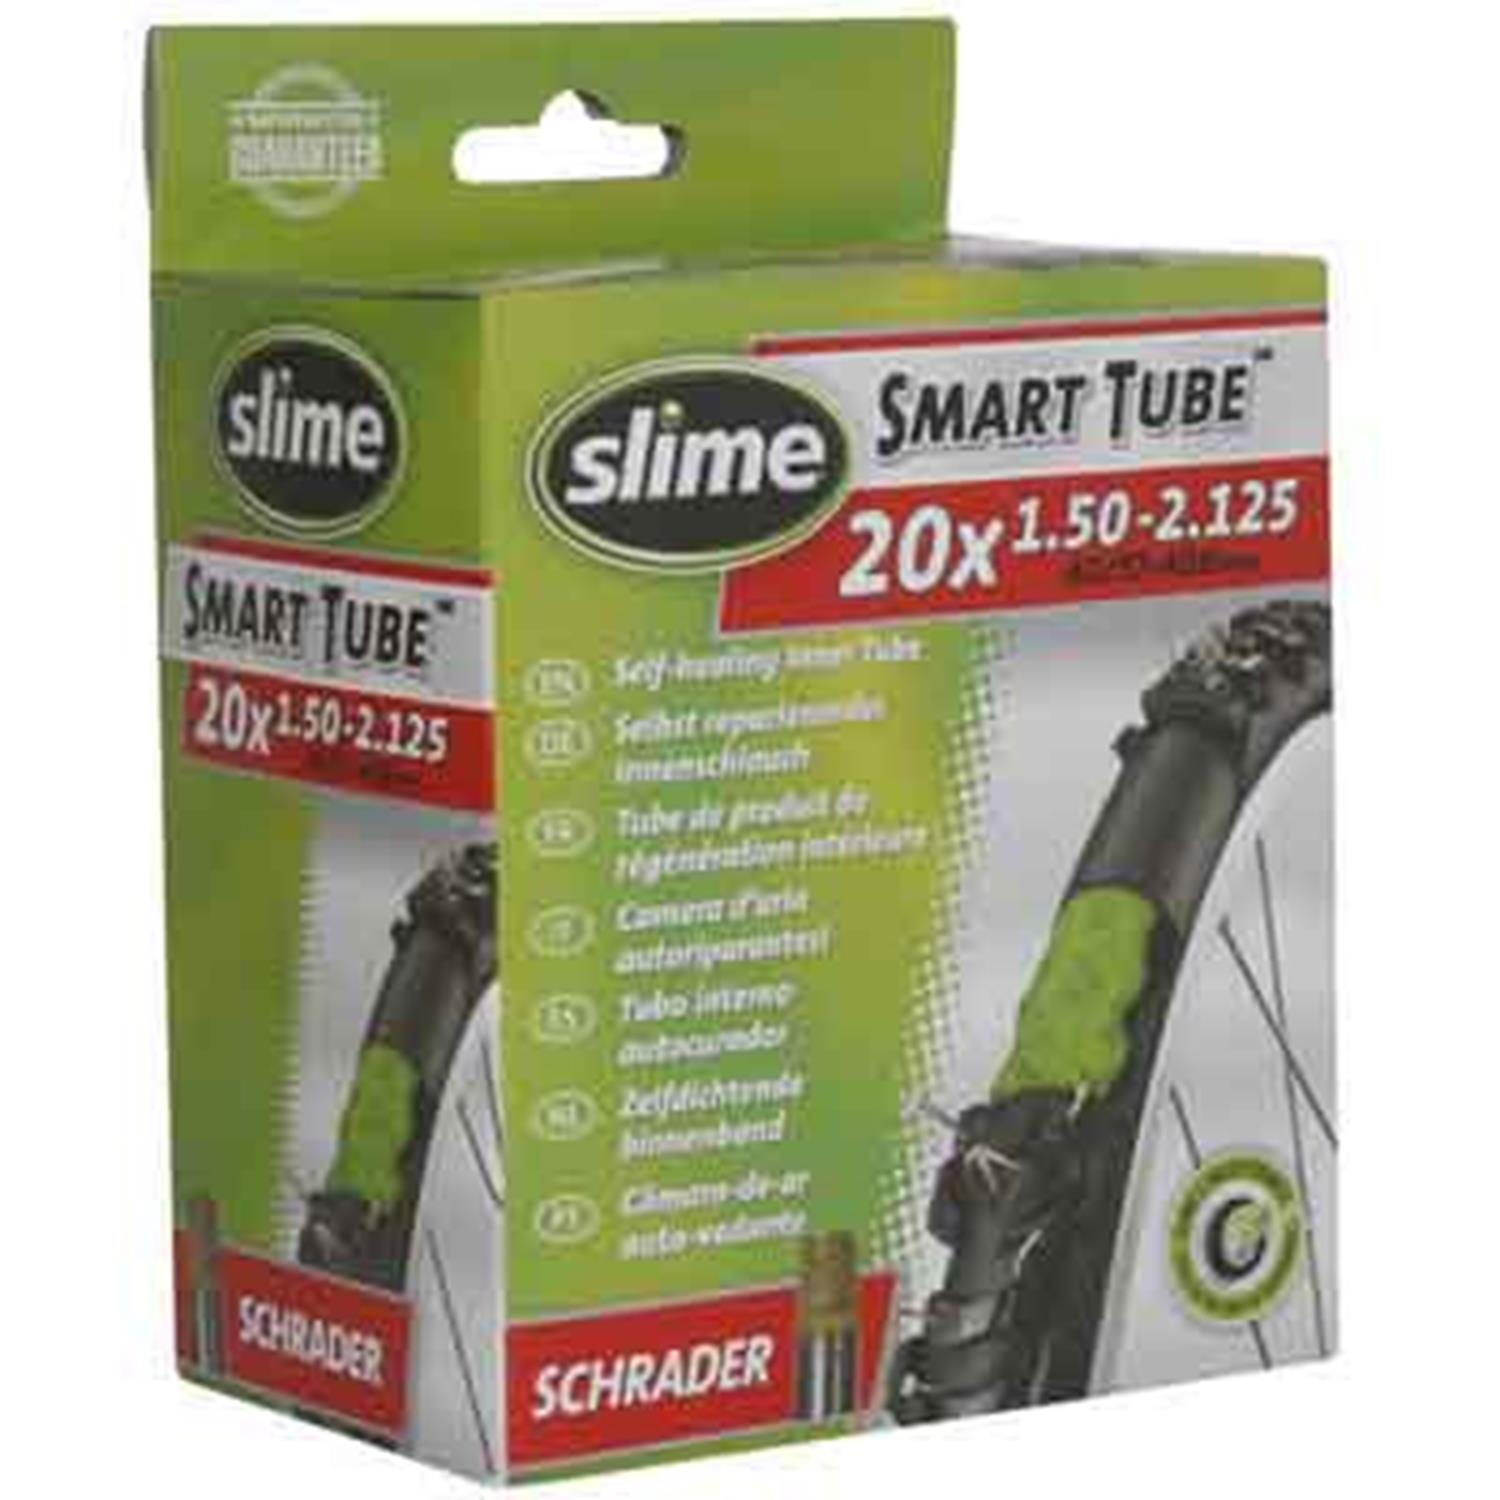 Slime Smart Tube - 20" x 1.50-2.125 - Schrader Valve 1/5